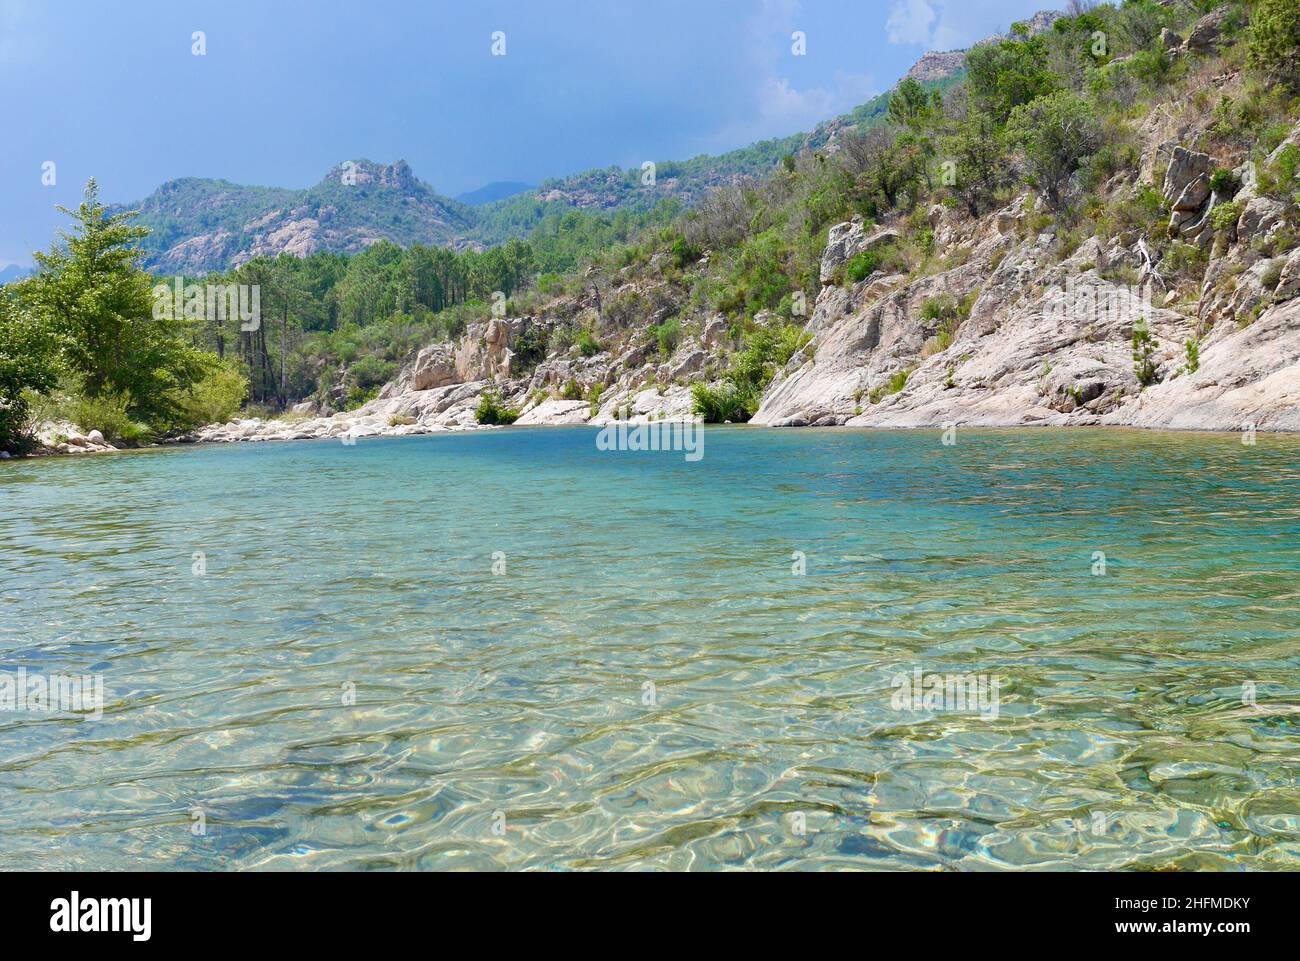 Rivière Solenzara avec eau turquoise au pied des sommets de Bavella en Corse du Sud, France.Photo de haute qualité Banque D'Images